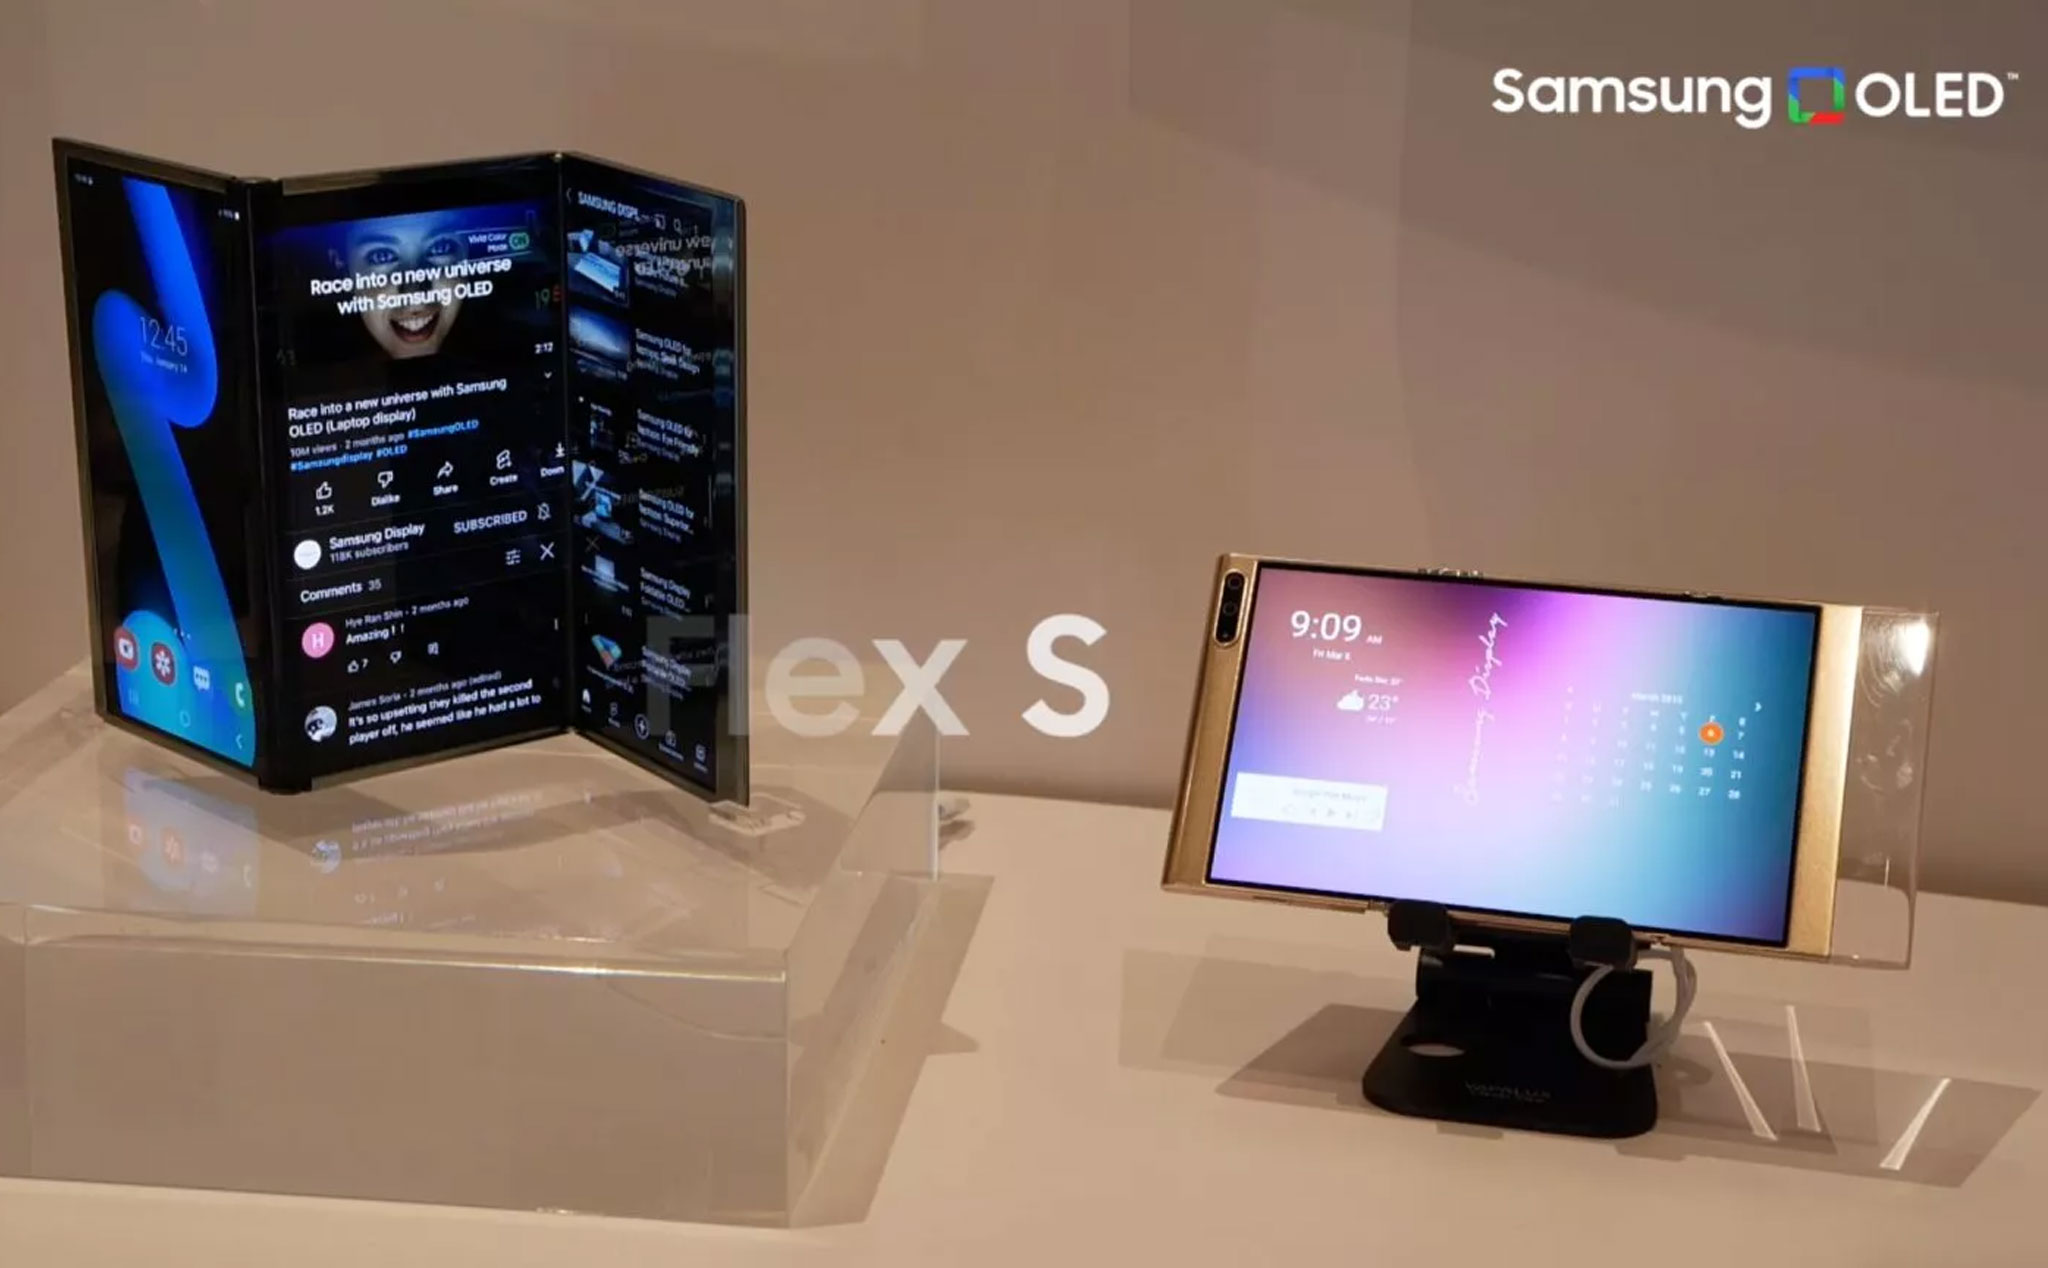 Đây là thiết bị gập hoàn toàn mới của Samsung